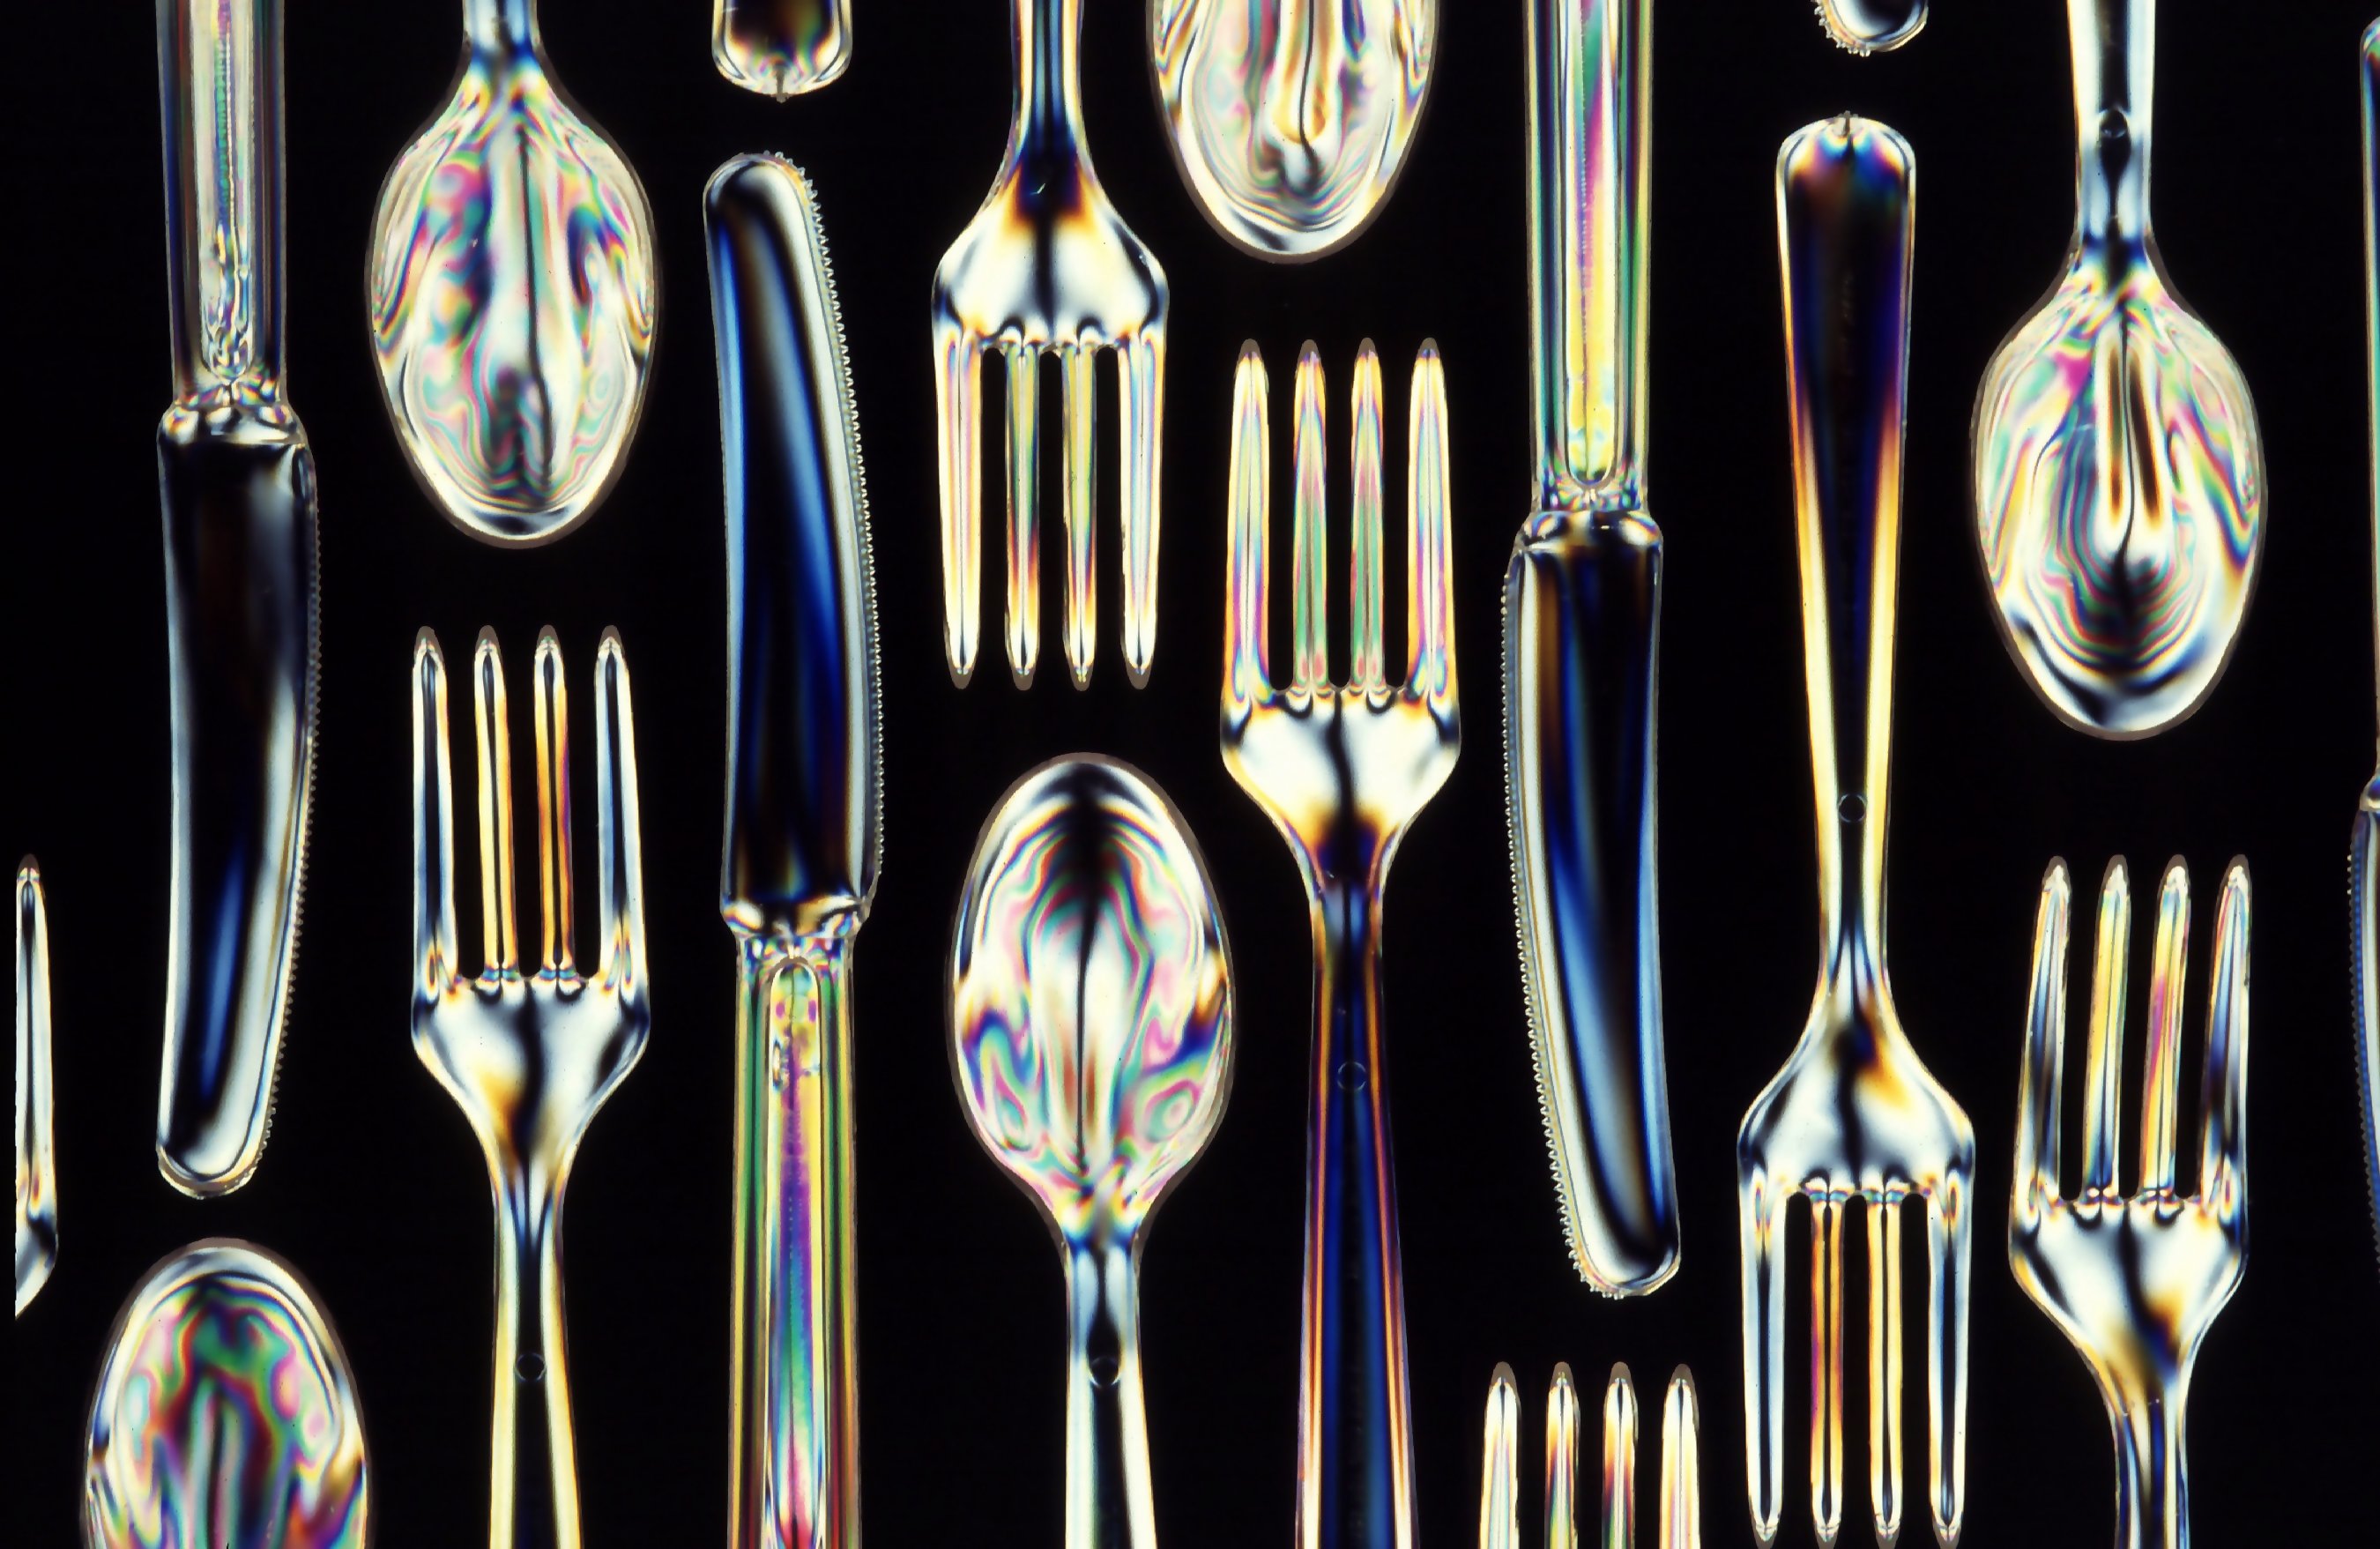 Kitchen utensil - Wikipedia, the free encyclopedia